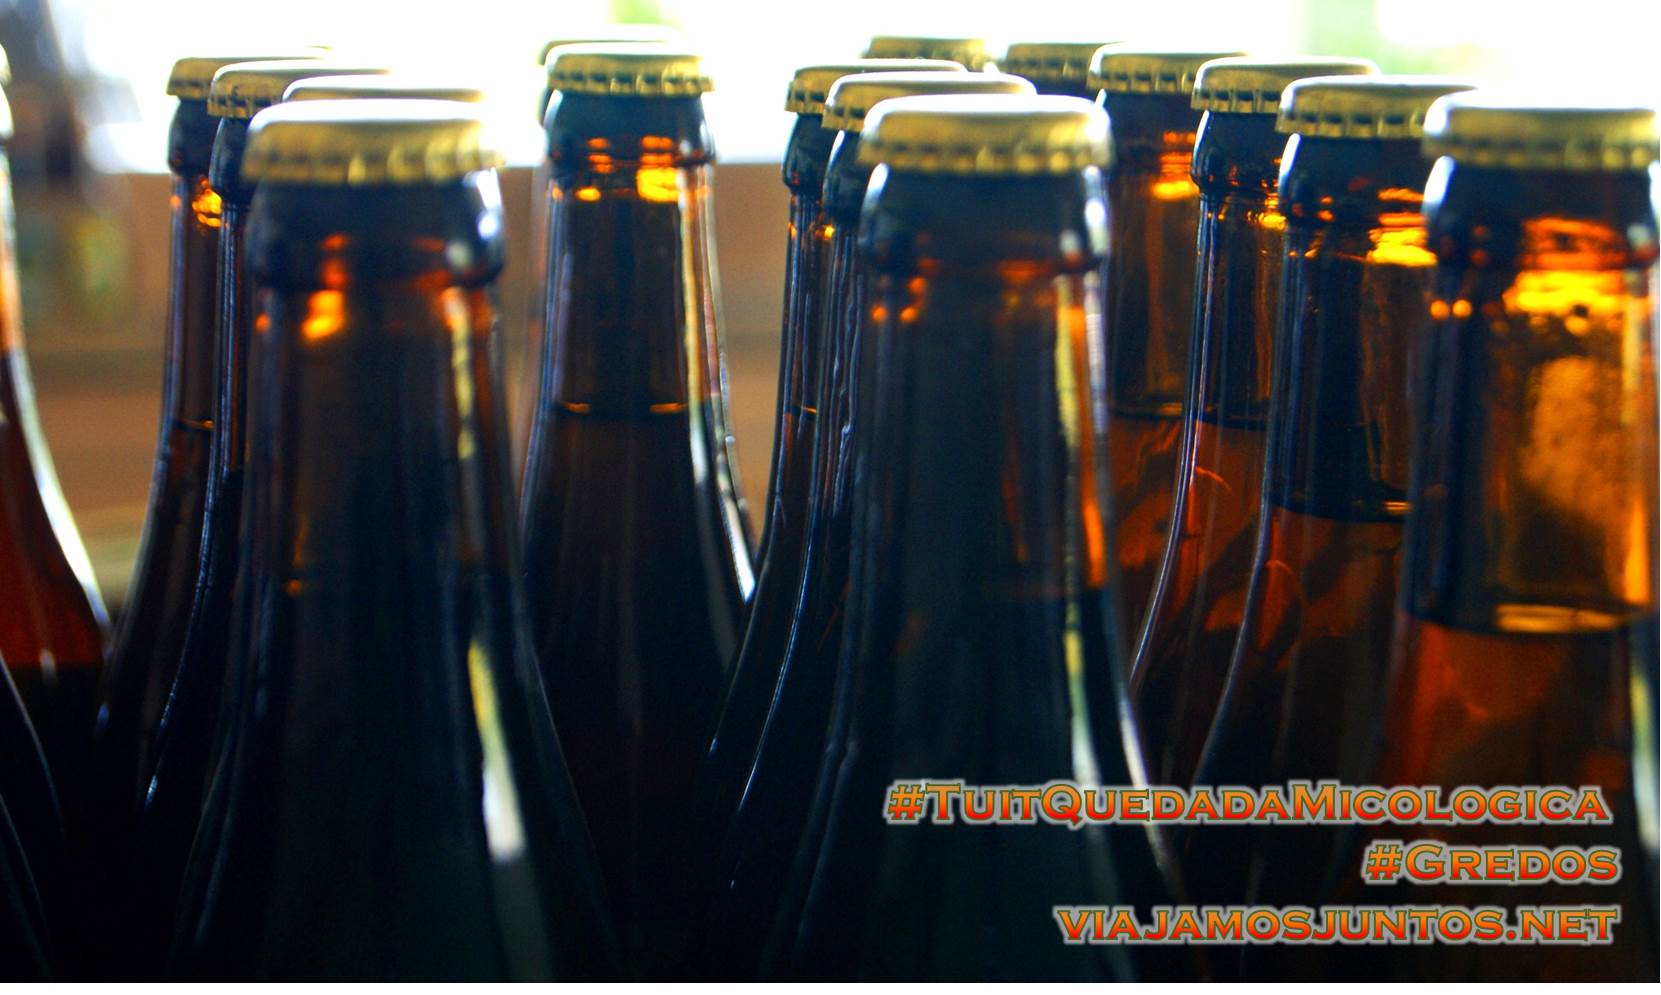 Cerveza de Gredos, la fábrica en Hoyocasero, Gredos, durante la #TuitQuedadaMicologica